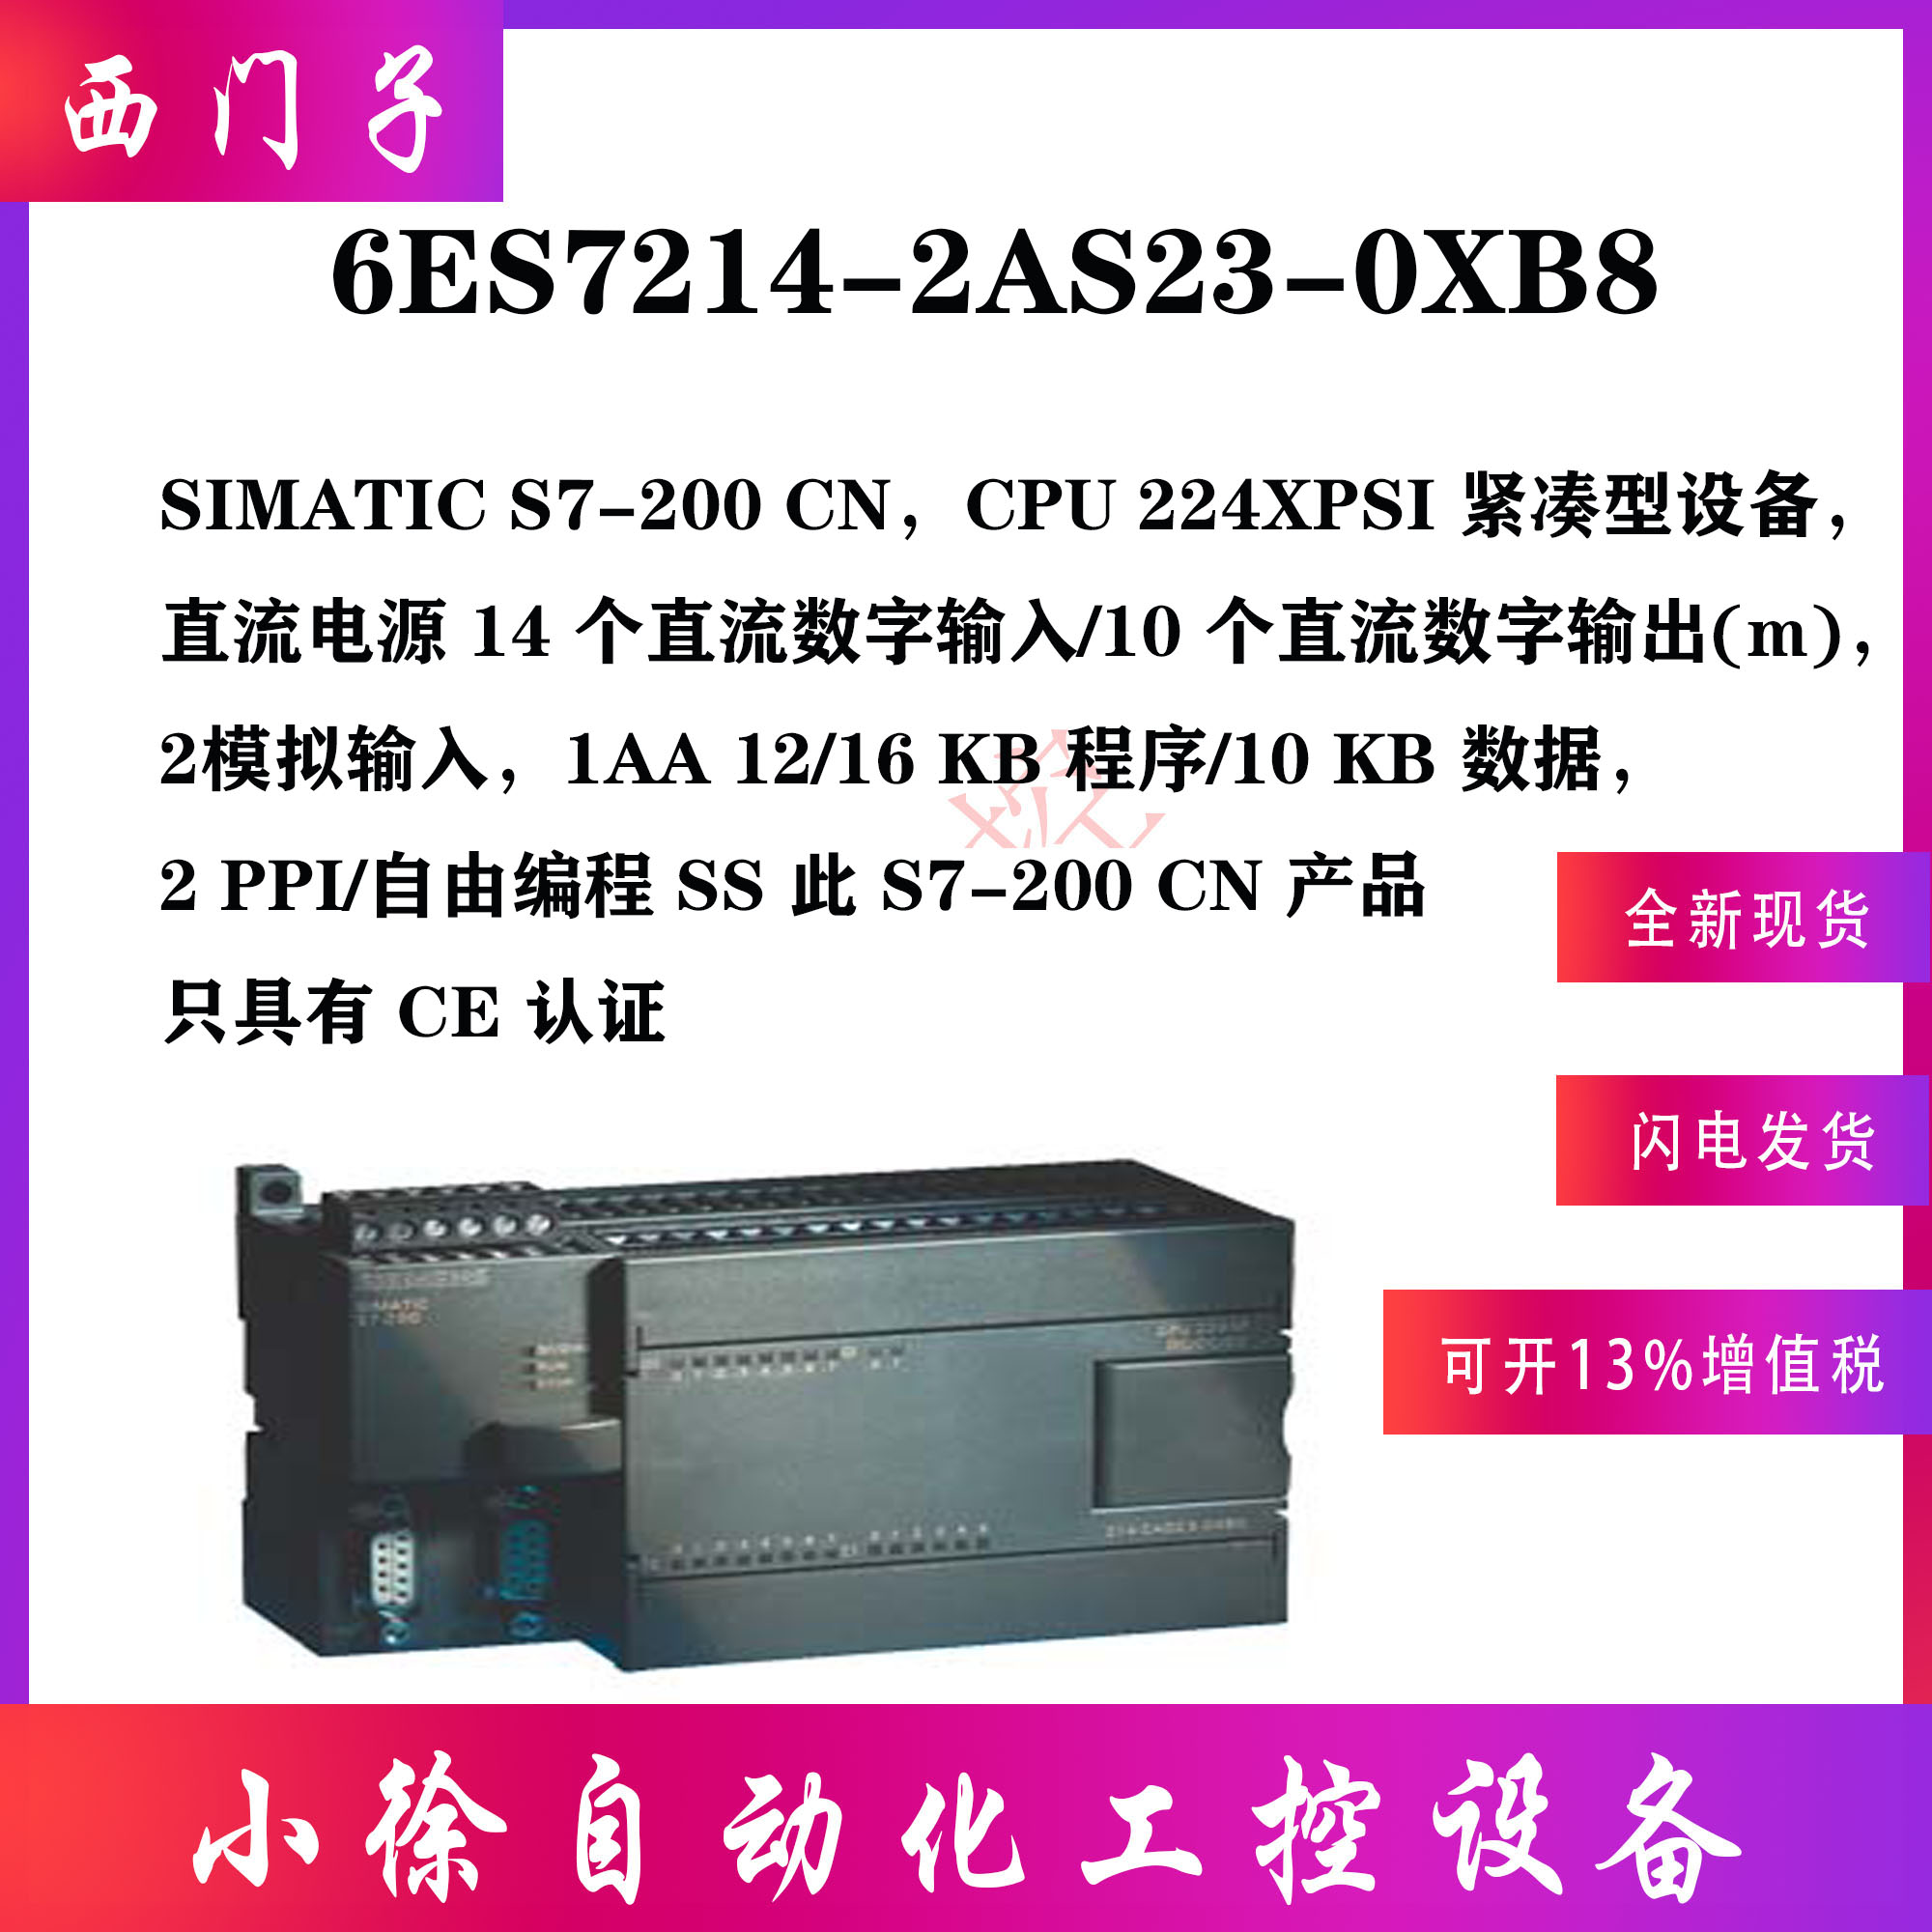 6ES7214-2AS23-0XB8西门子原装正品200CN CPU224XPsi,DC,14输入/1